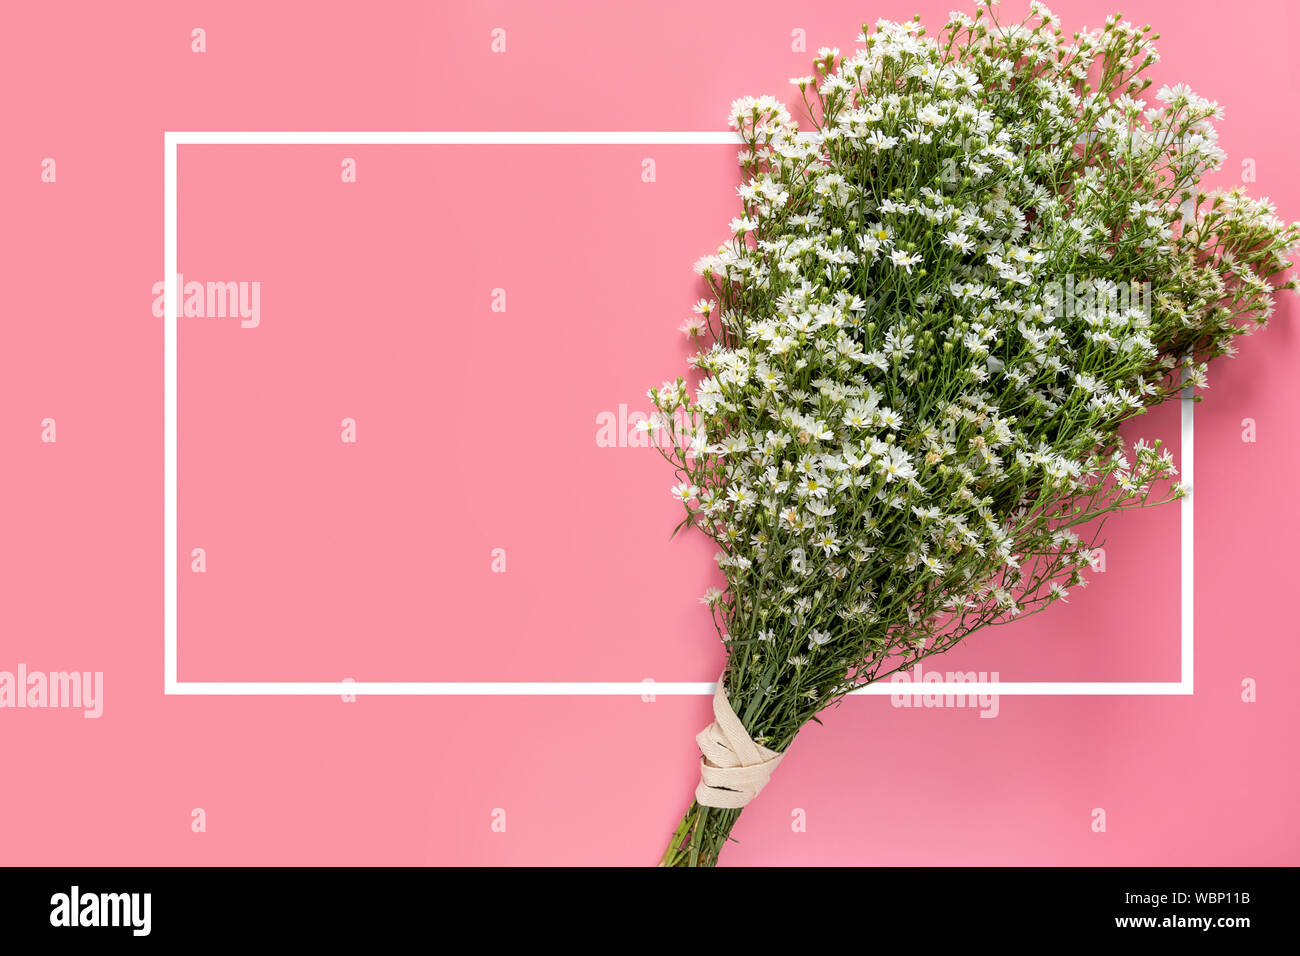 Kreative von minimalen Frühling frische weiße Blumenstrauß auf rosa Hintergrund mit weißen Rahmen Rahmen und kopieren Raum isoliert für Text auf der Grußkarte oder Stockfoto